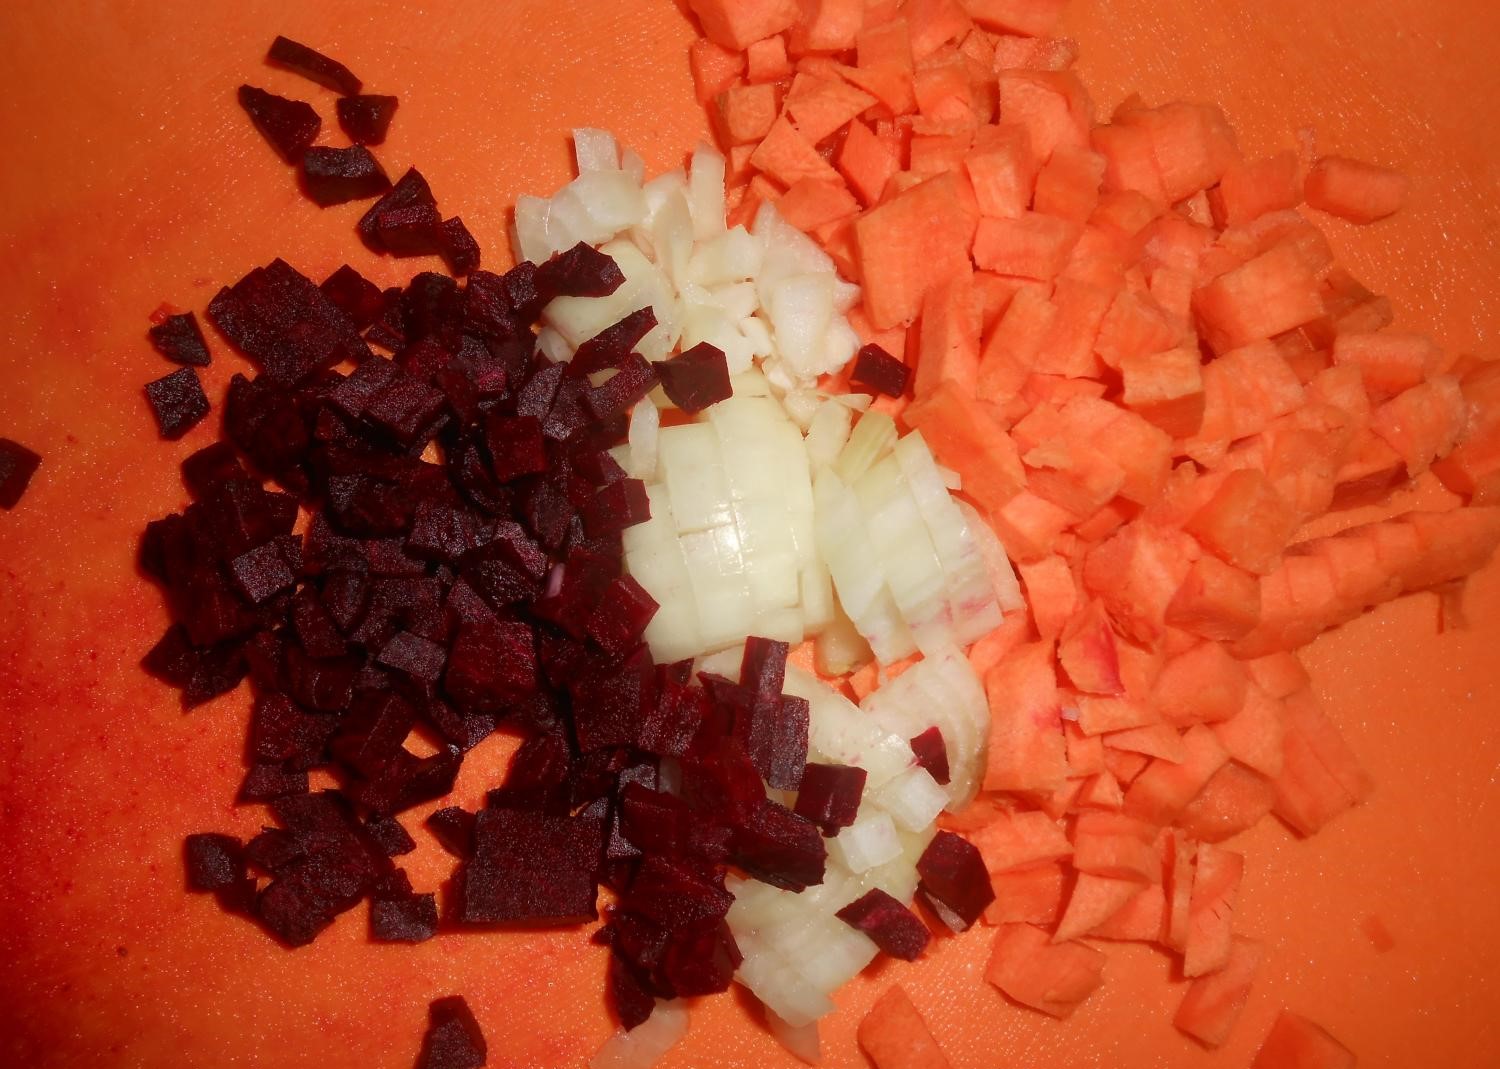 нарезанные кубиками свекла, репчатый лук и морковь на оранжевой разделочной доске